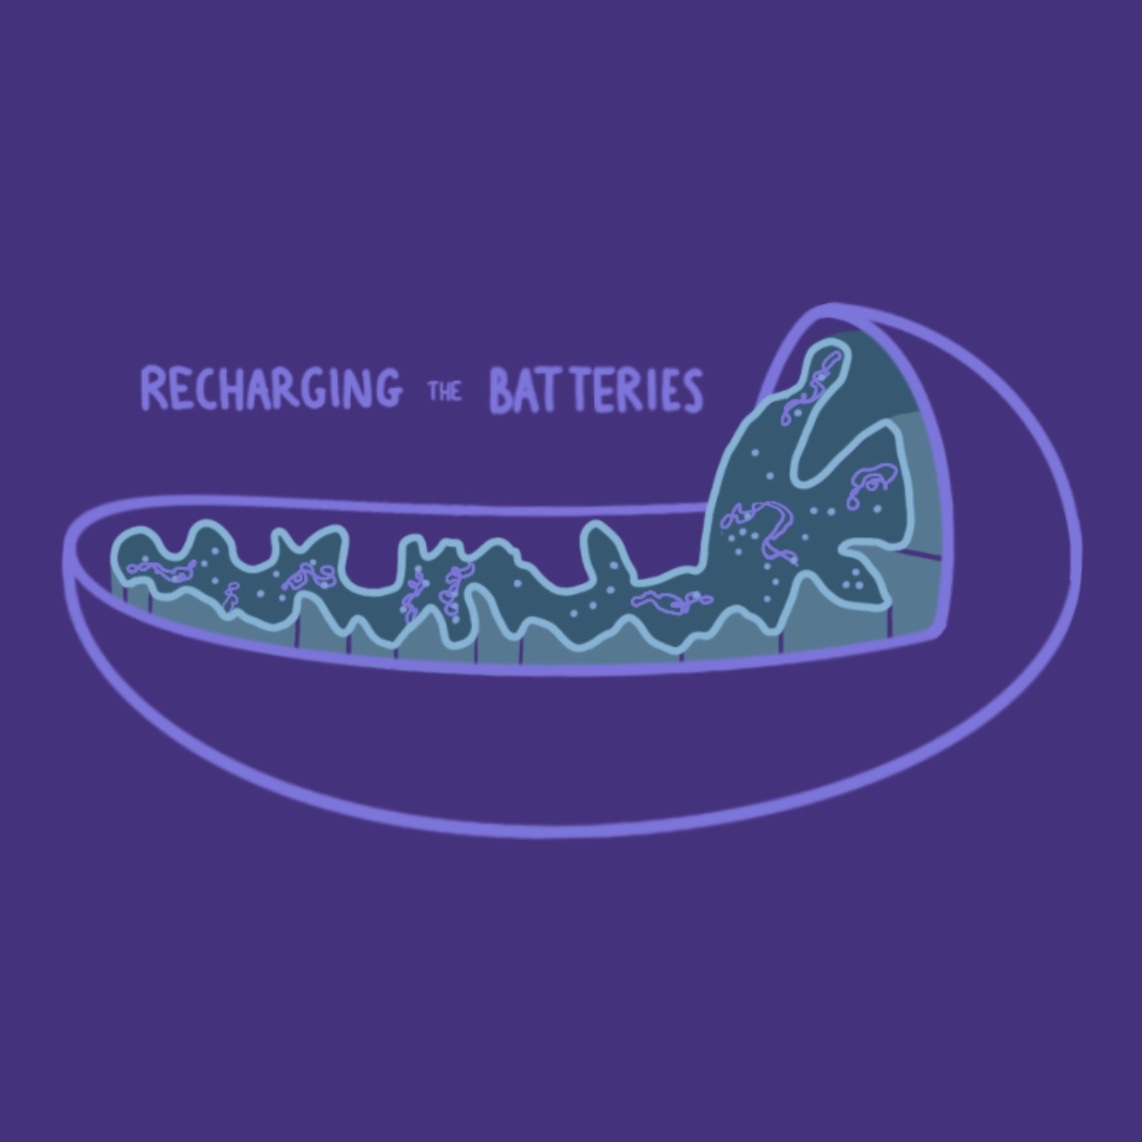 Recharging the Batteries